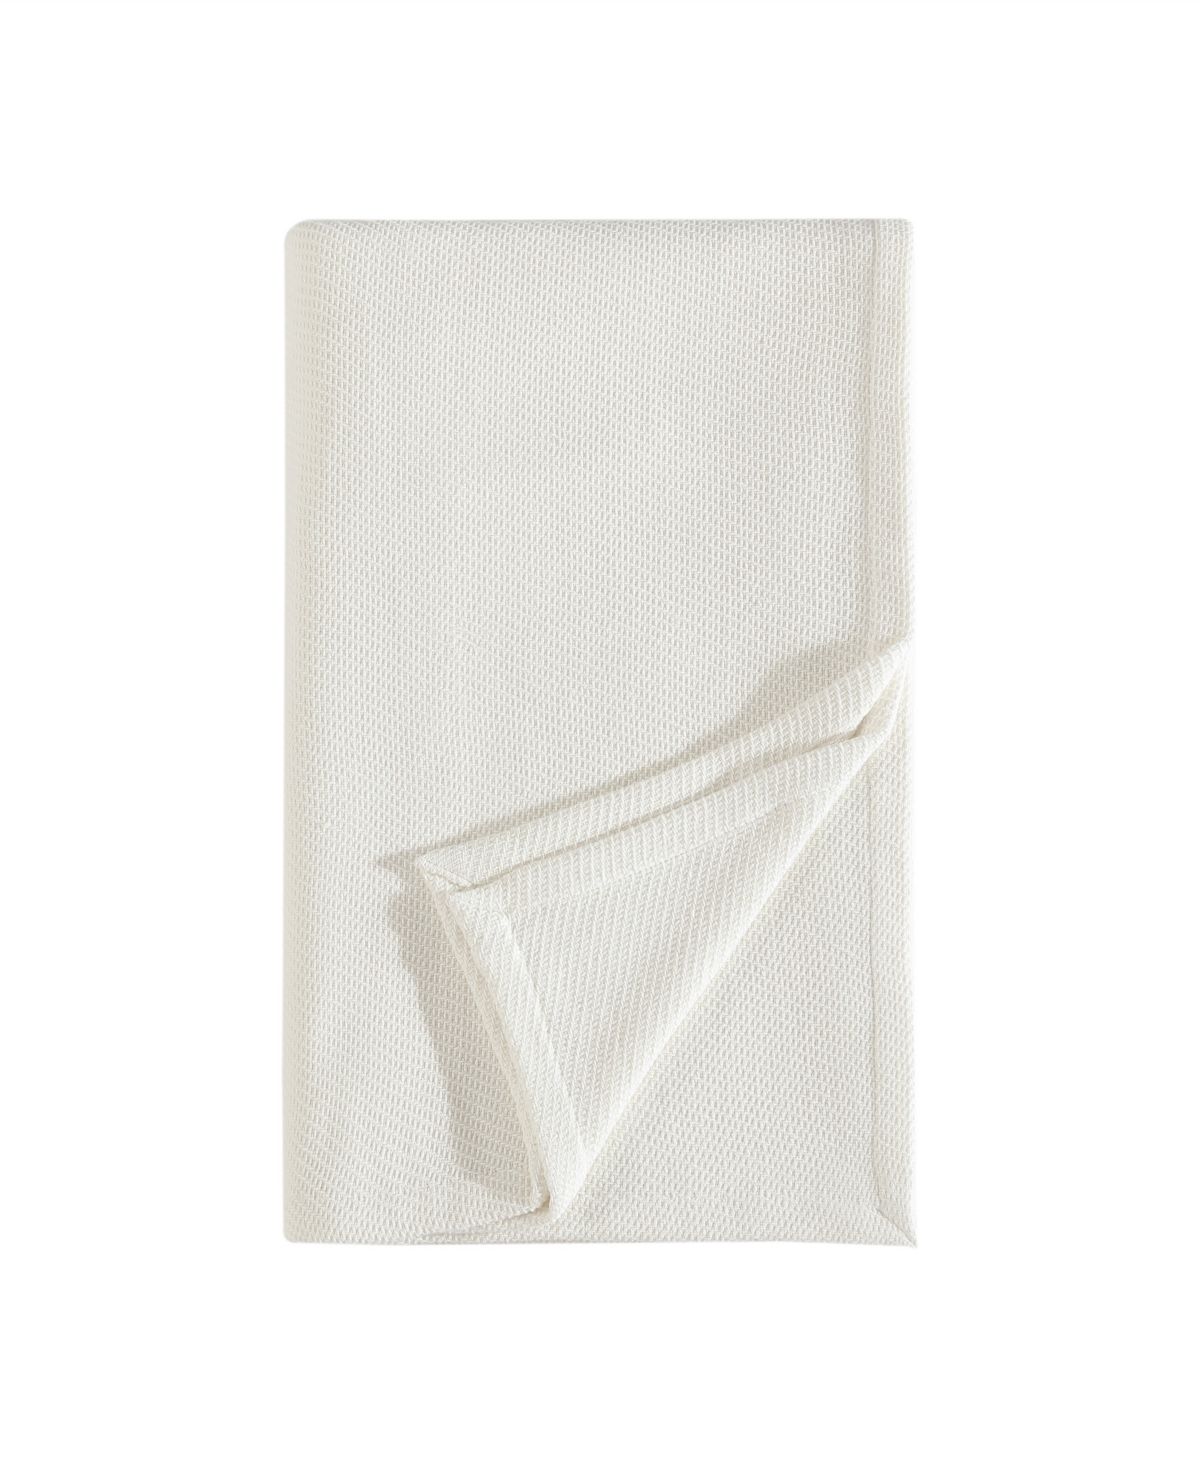 Eddie Bauer Textured Twill Solid Blanket, Twin In White